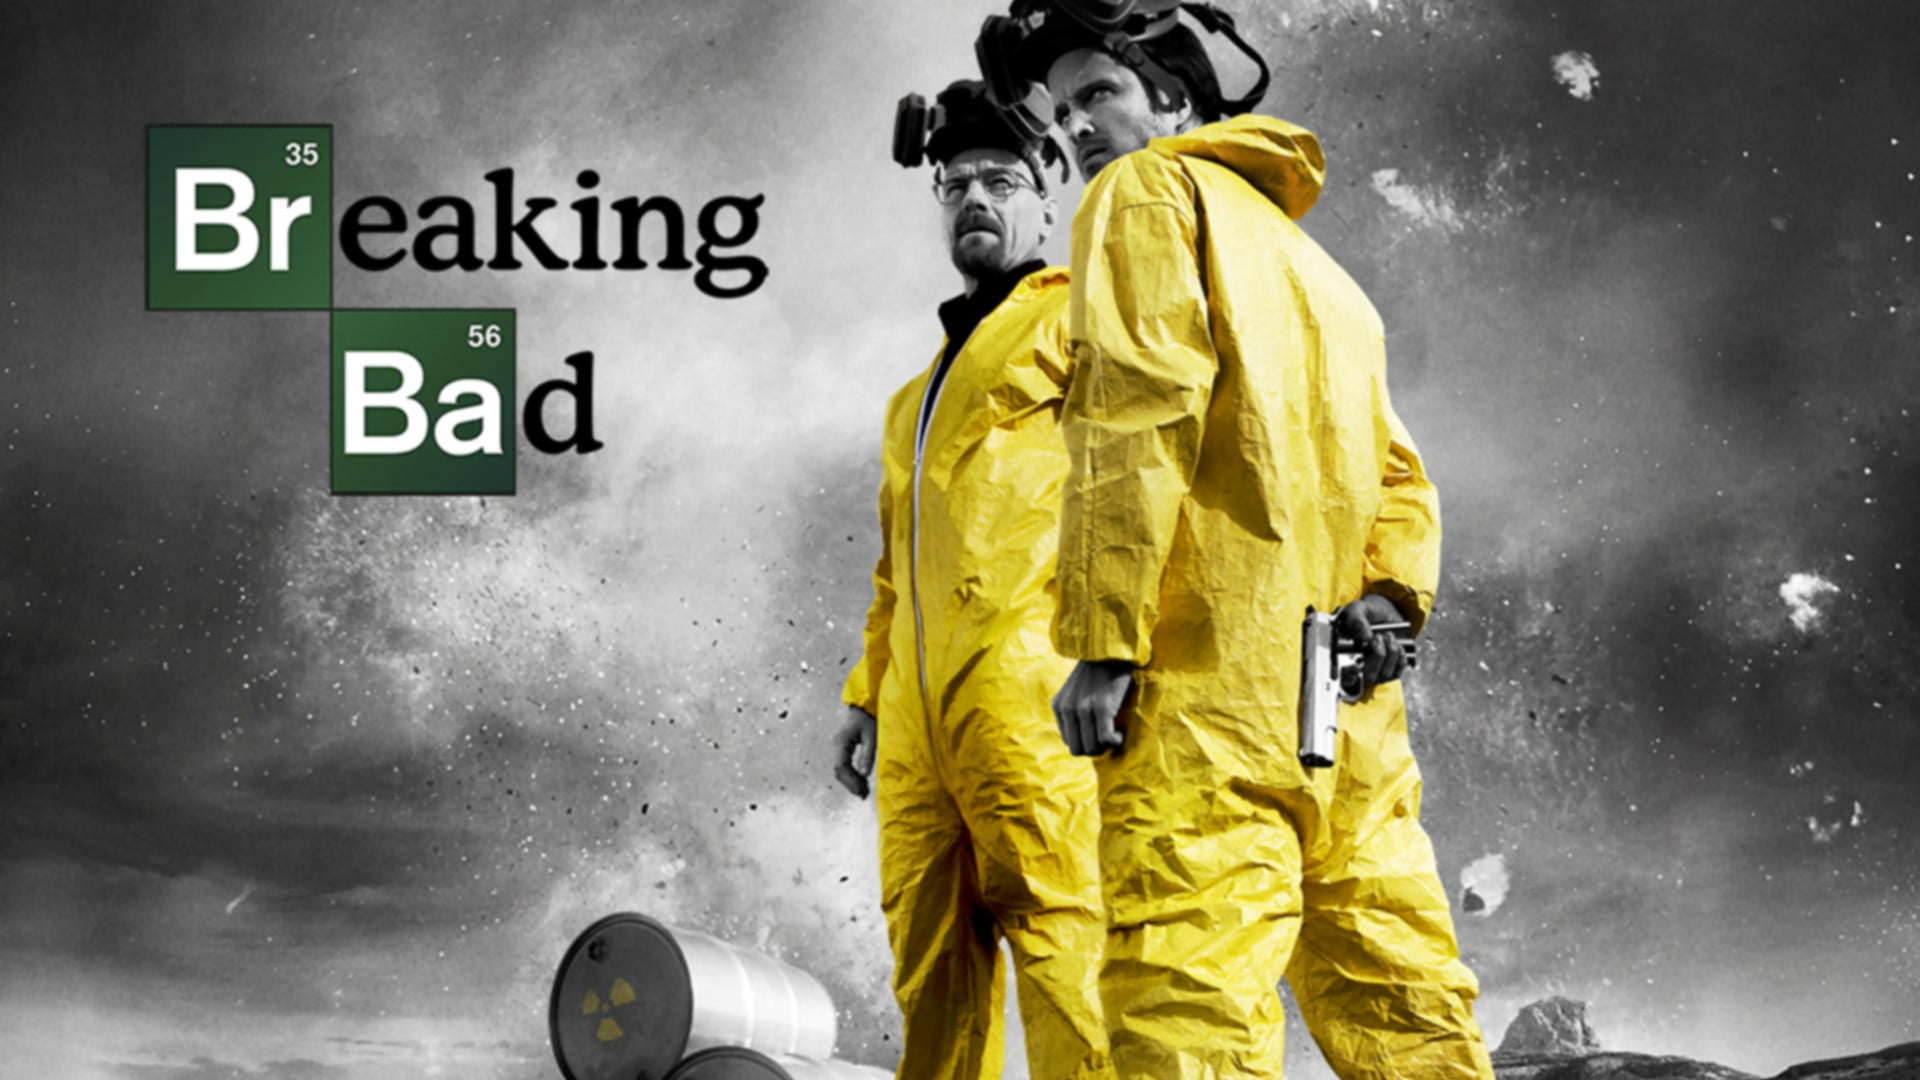 Breaking Bad digital wallpaper, Breaking Bad, Heisenberg, Walter White, Aaron Paul